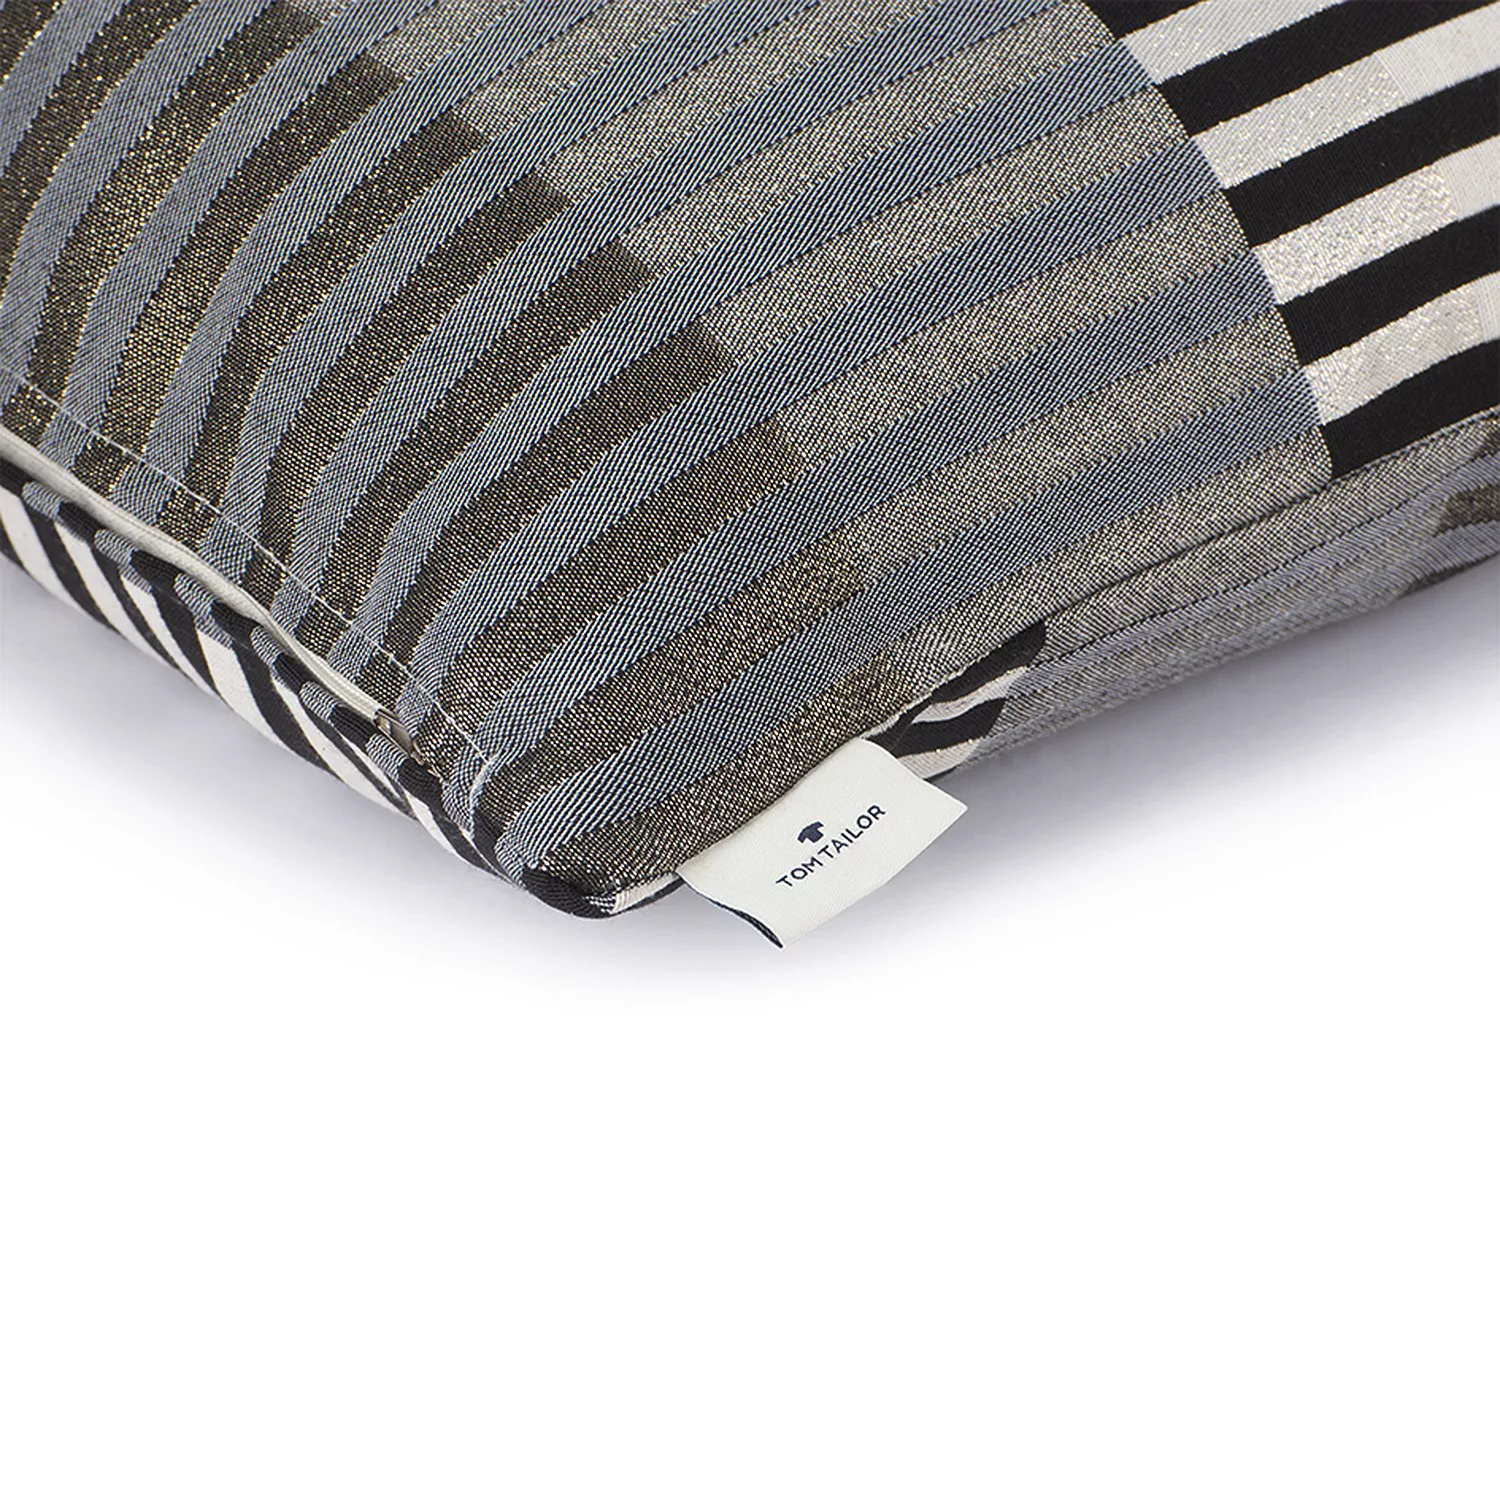 TOM TAILOR HOME Dekokissen »Glamour Stripe«, mit metallischen Effektgarnen, günstig online kaufen